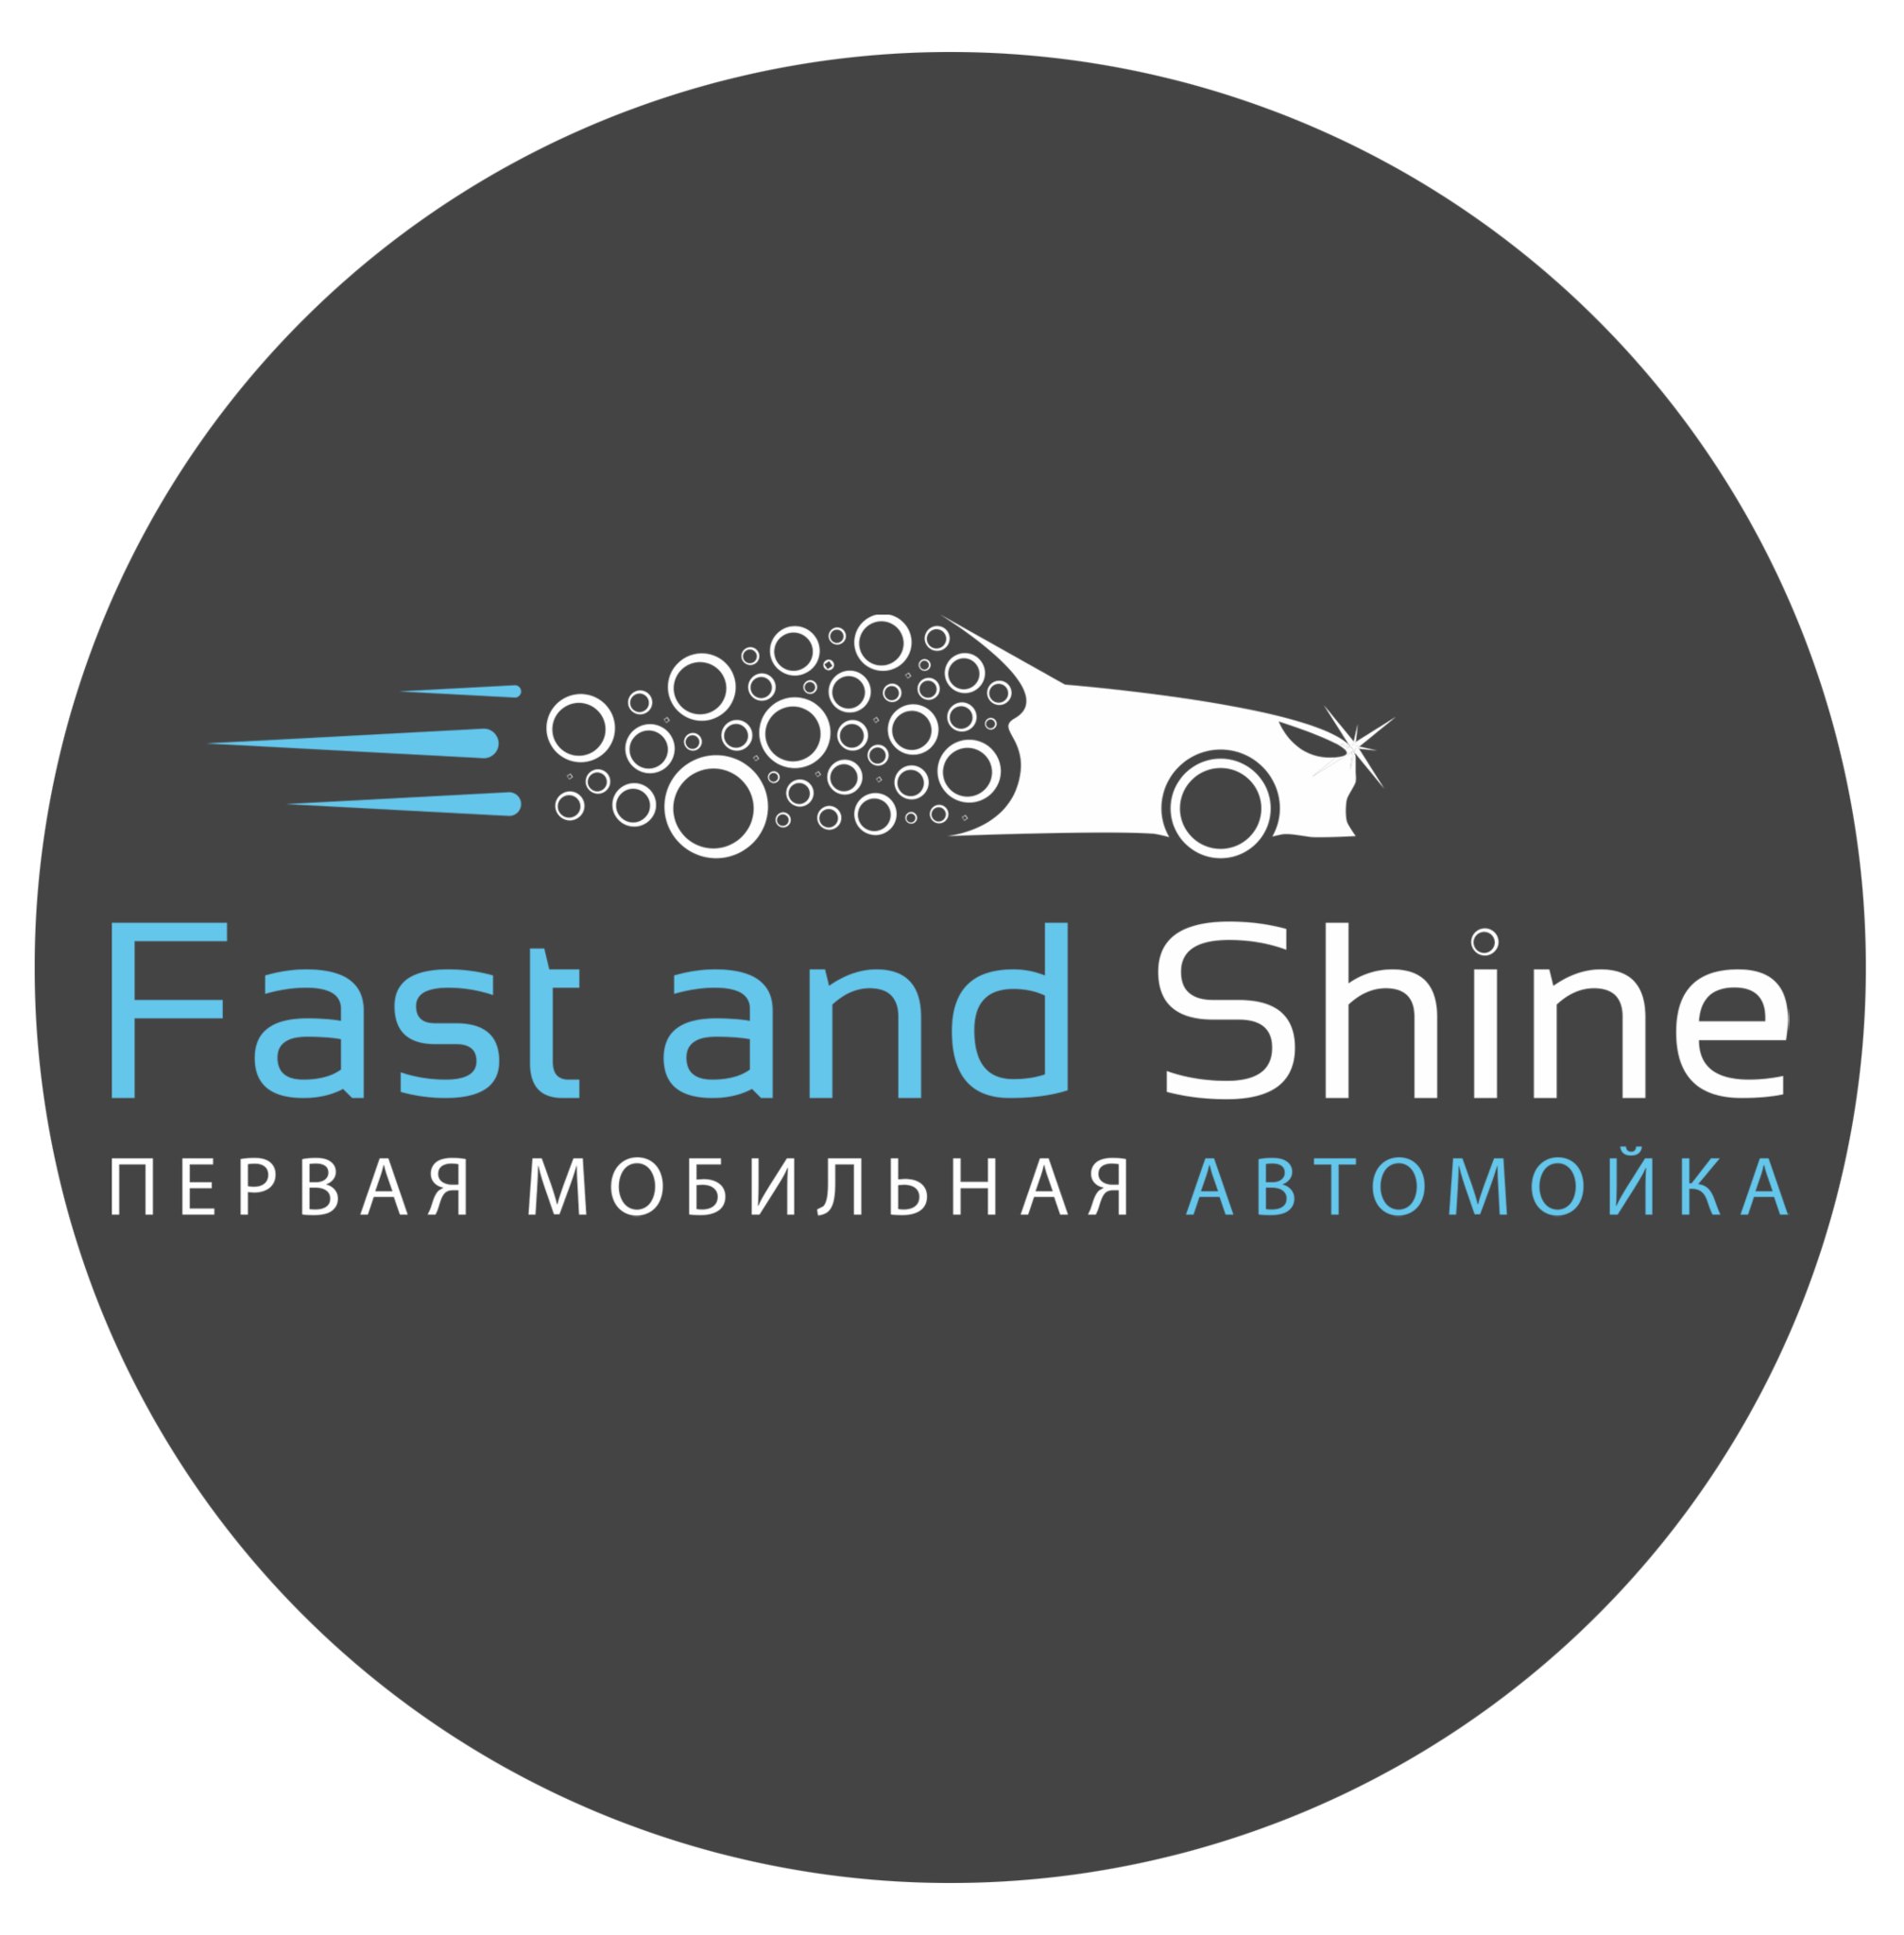 Продается Эксклюзивное право франшизы Fast and Shine в Беларуси